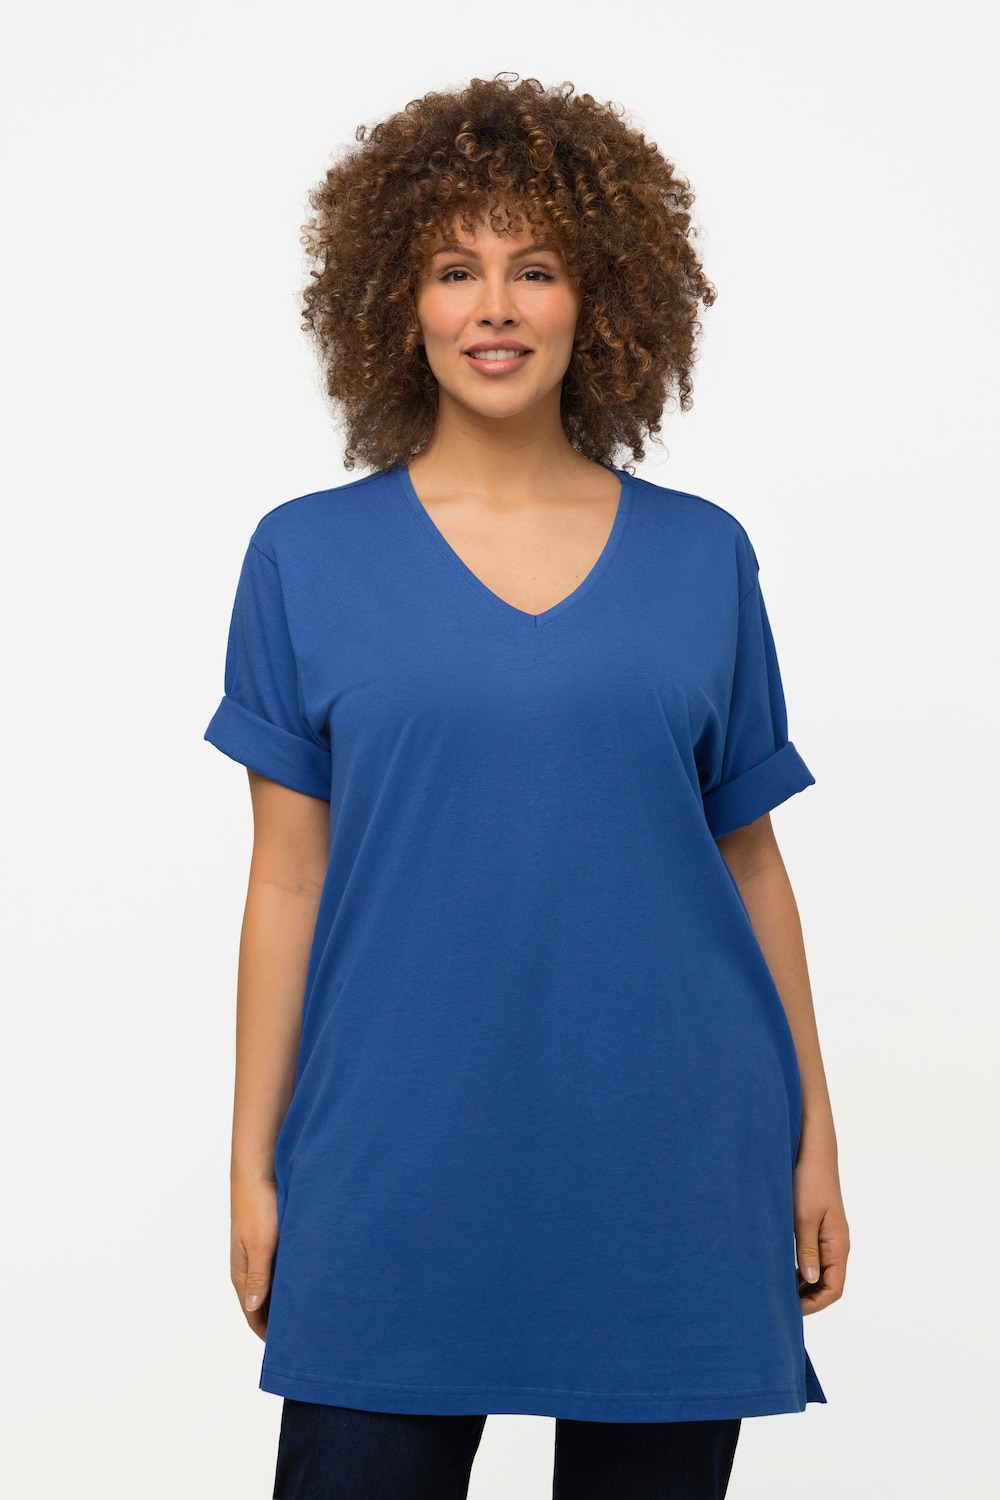 Grote Maten T-shirt, Dames, blauw, Maat: 46/48, Ulla Popken